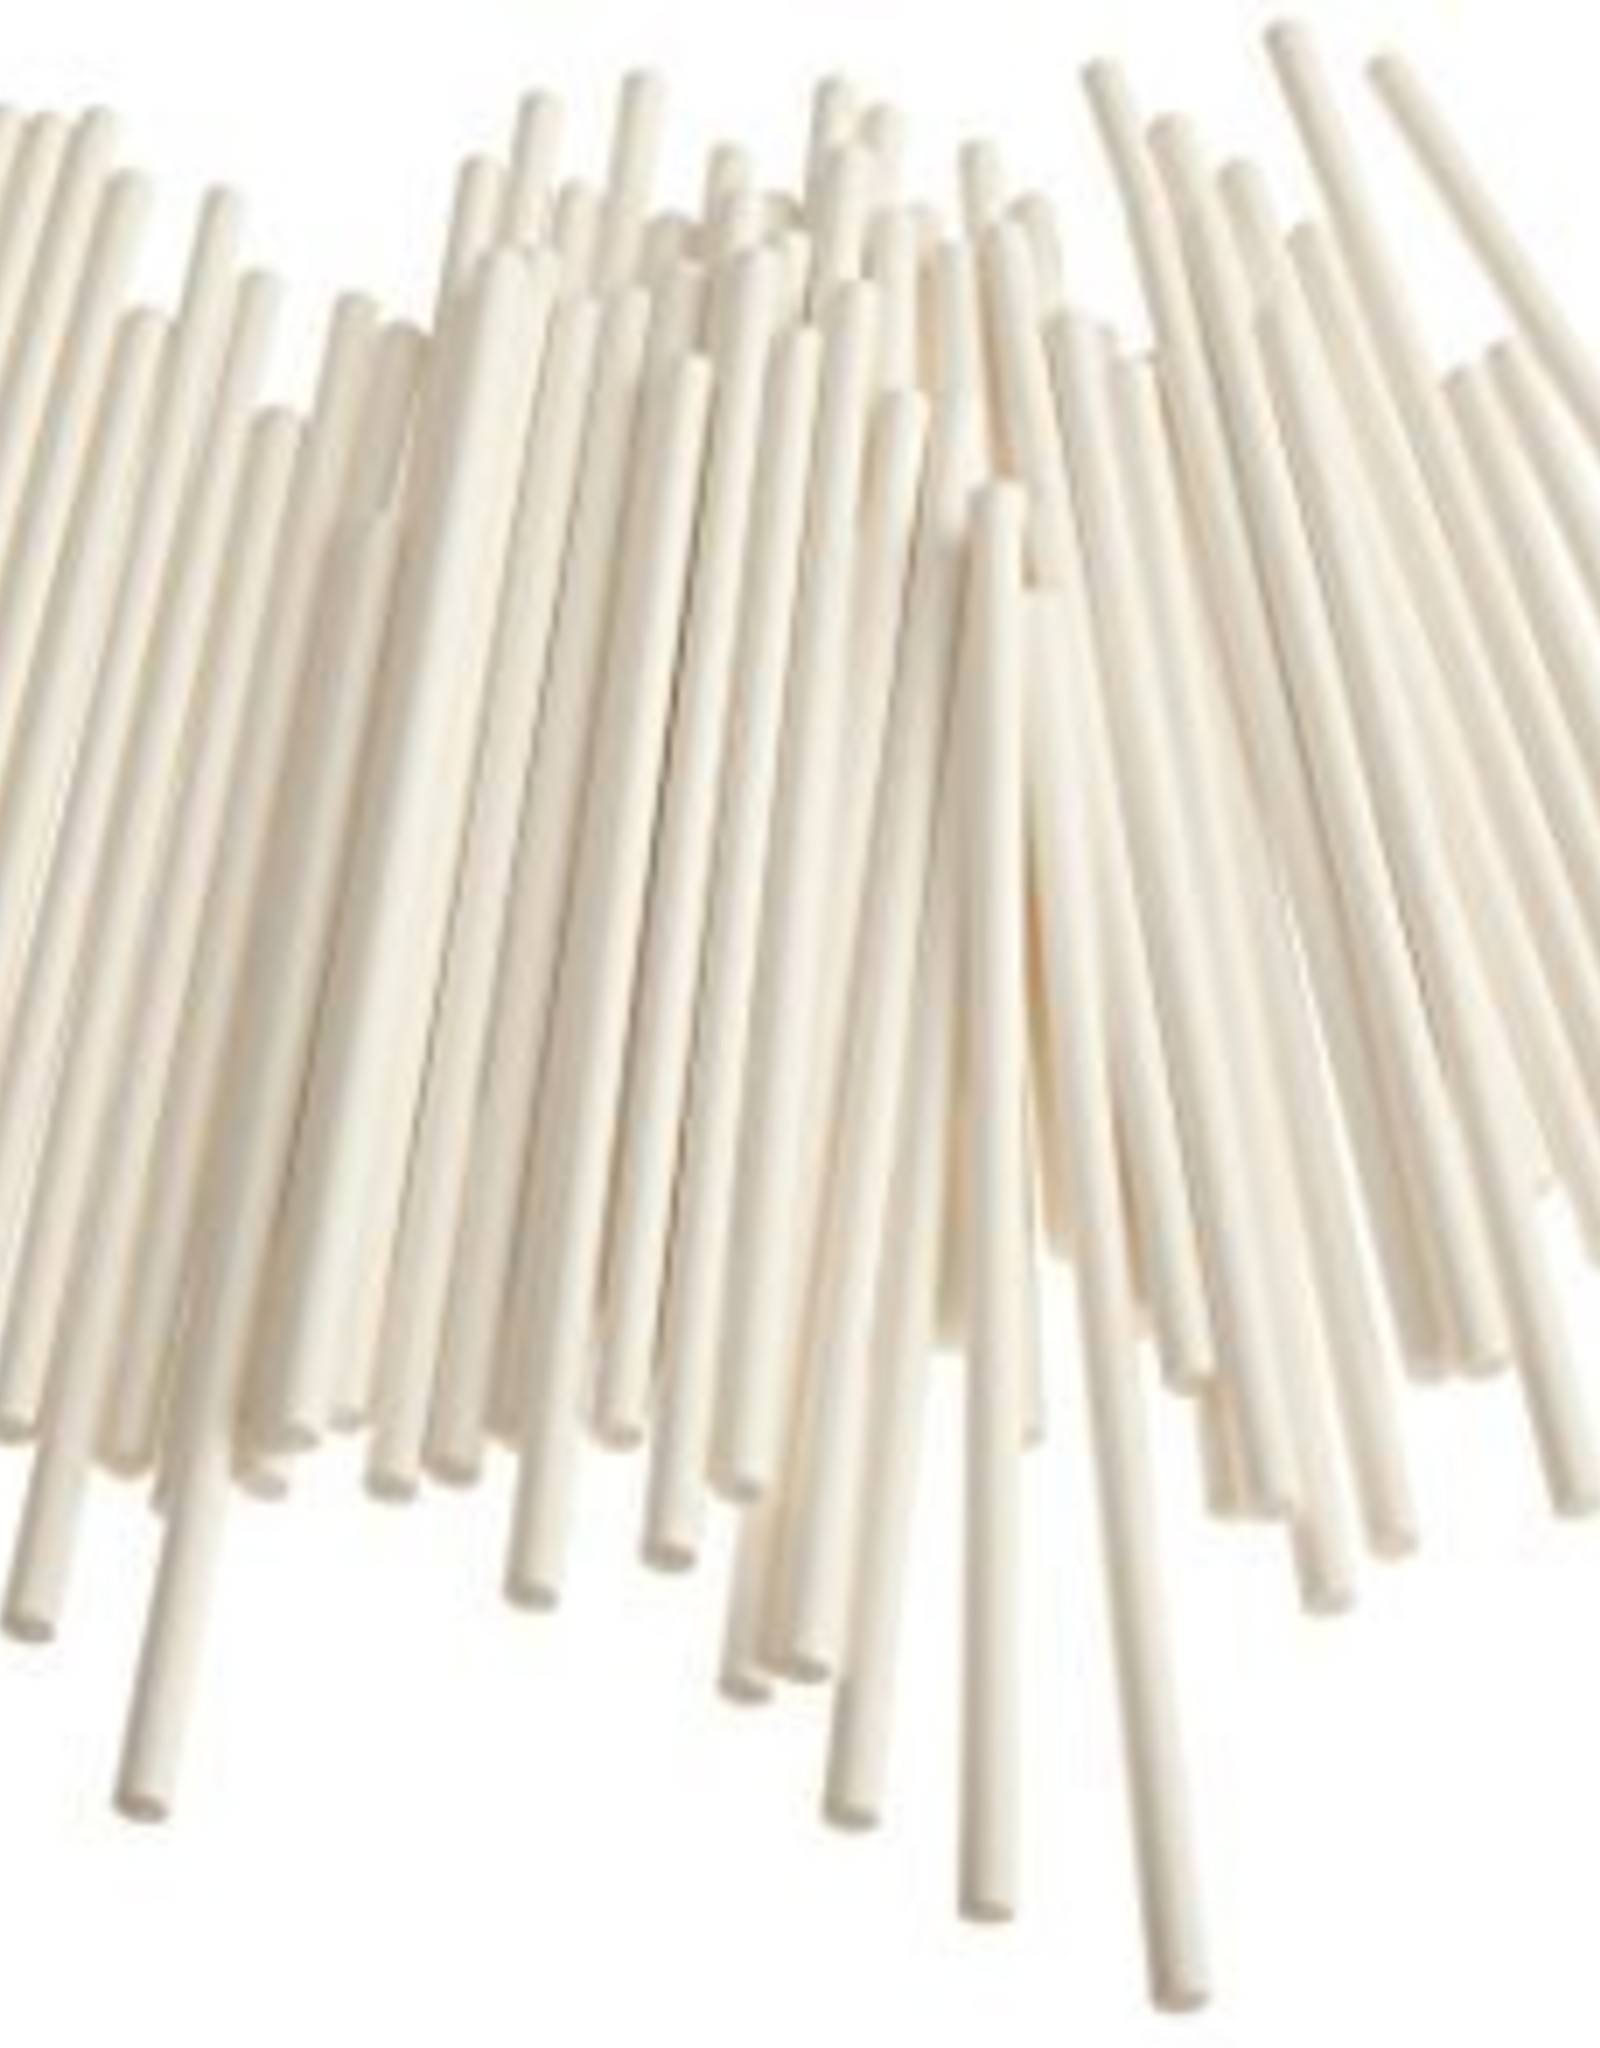 Sucker Sticks (4.5 inch) 25/pkg